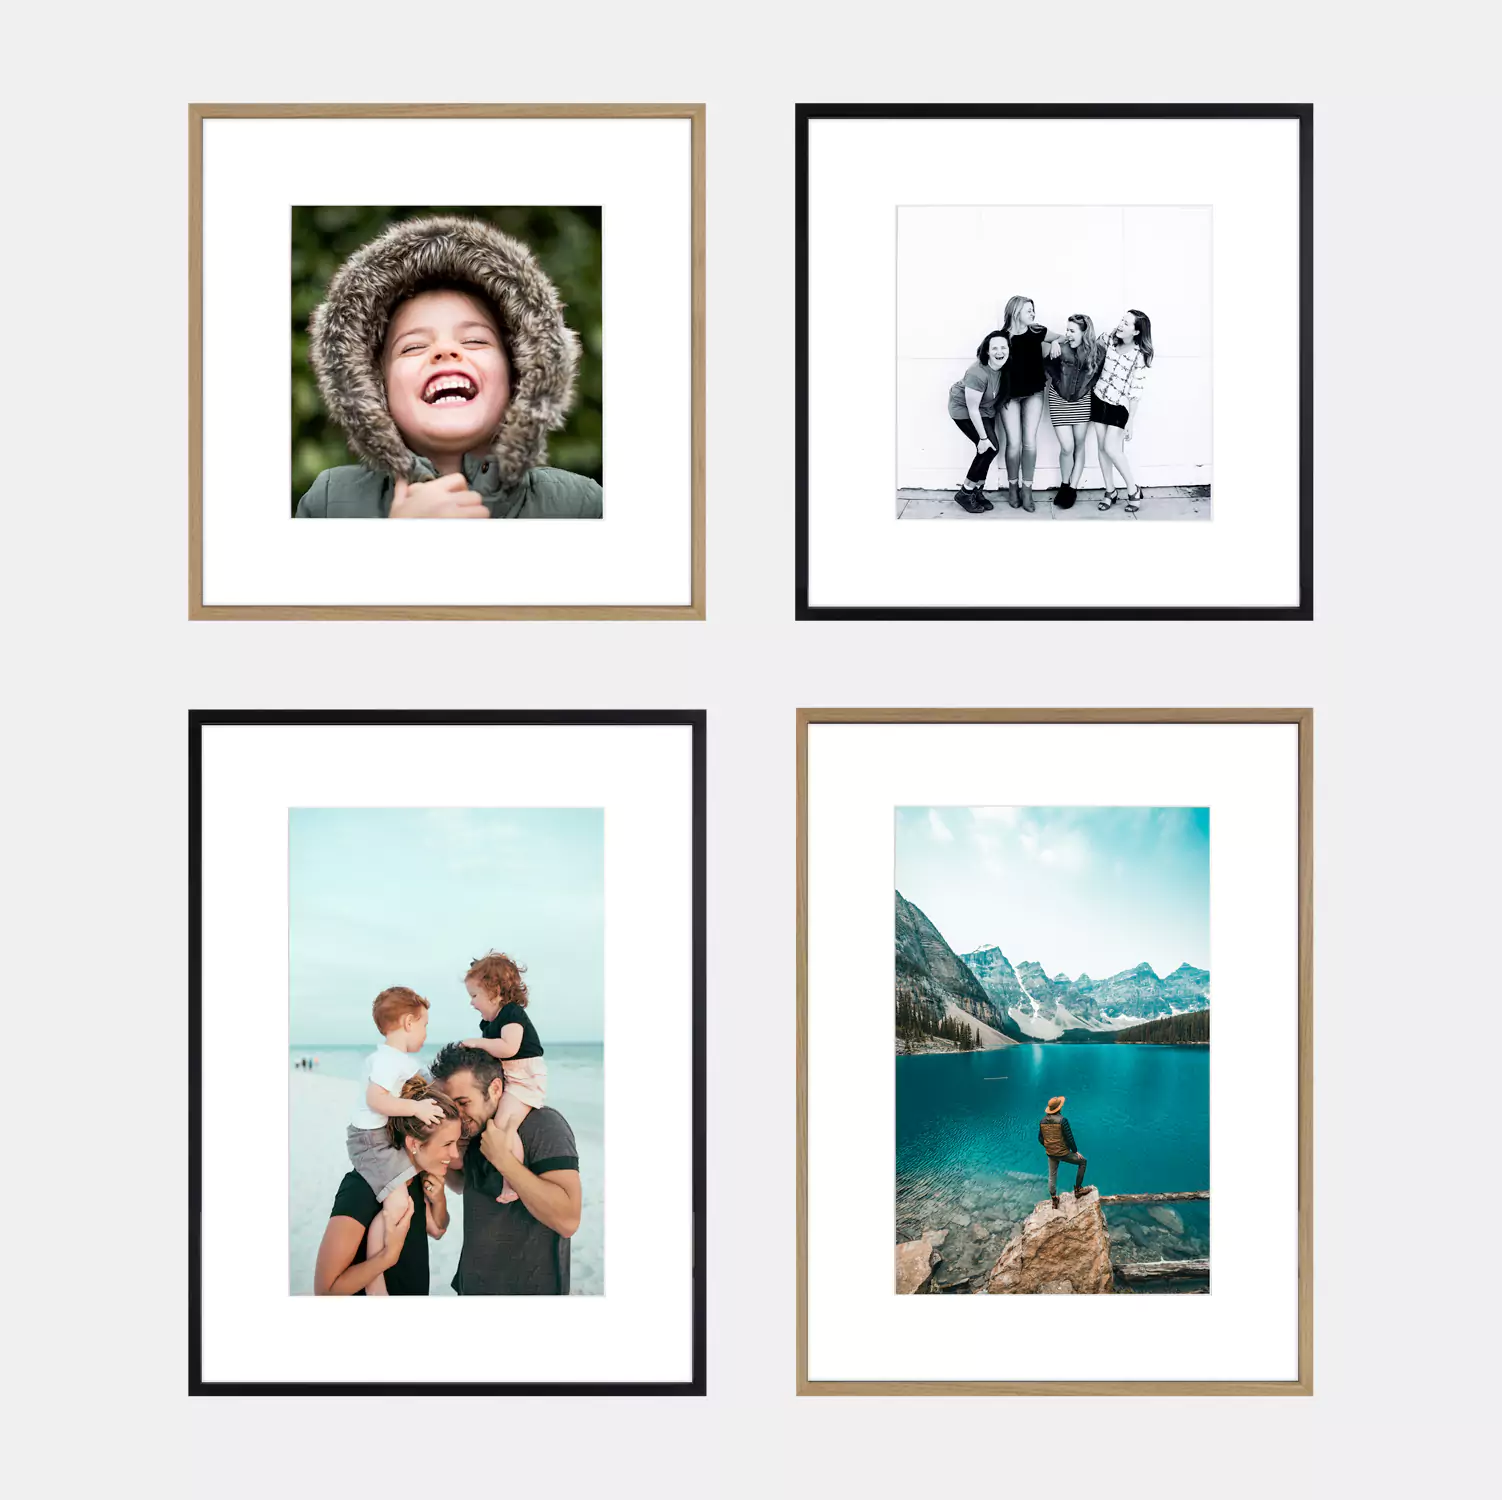 cadres photos en aluminium noir ou bois, vendus avec l'impression photo et la marie-louise